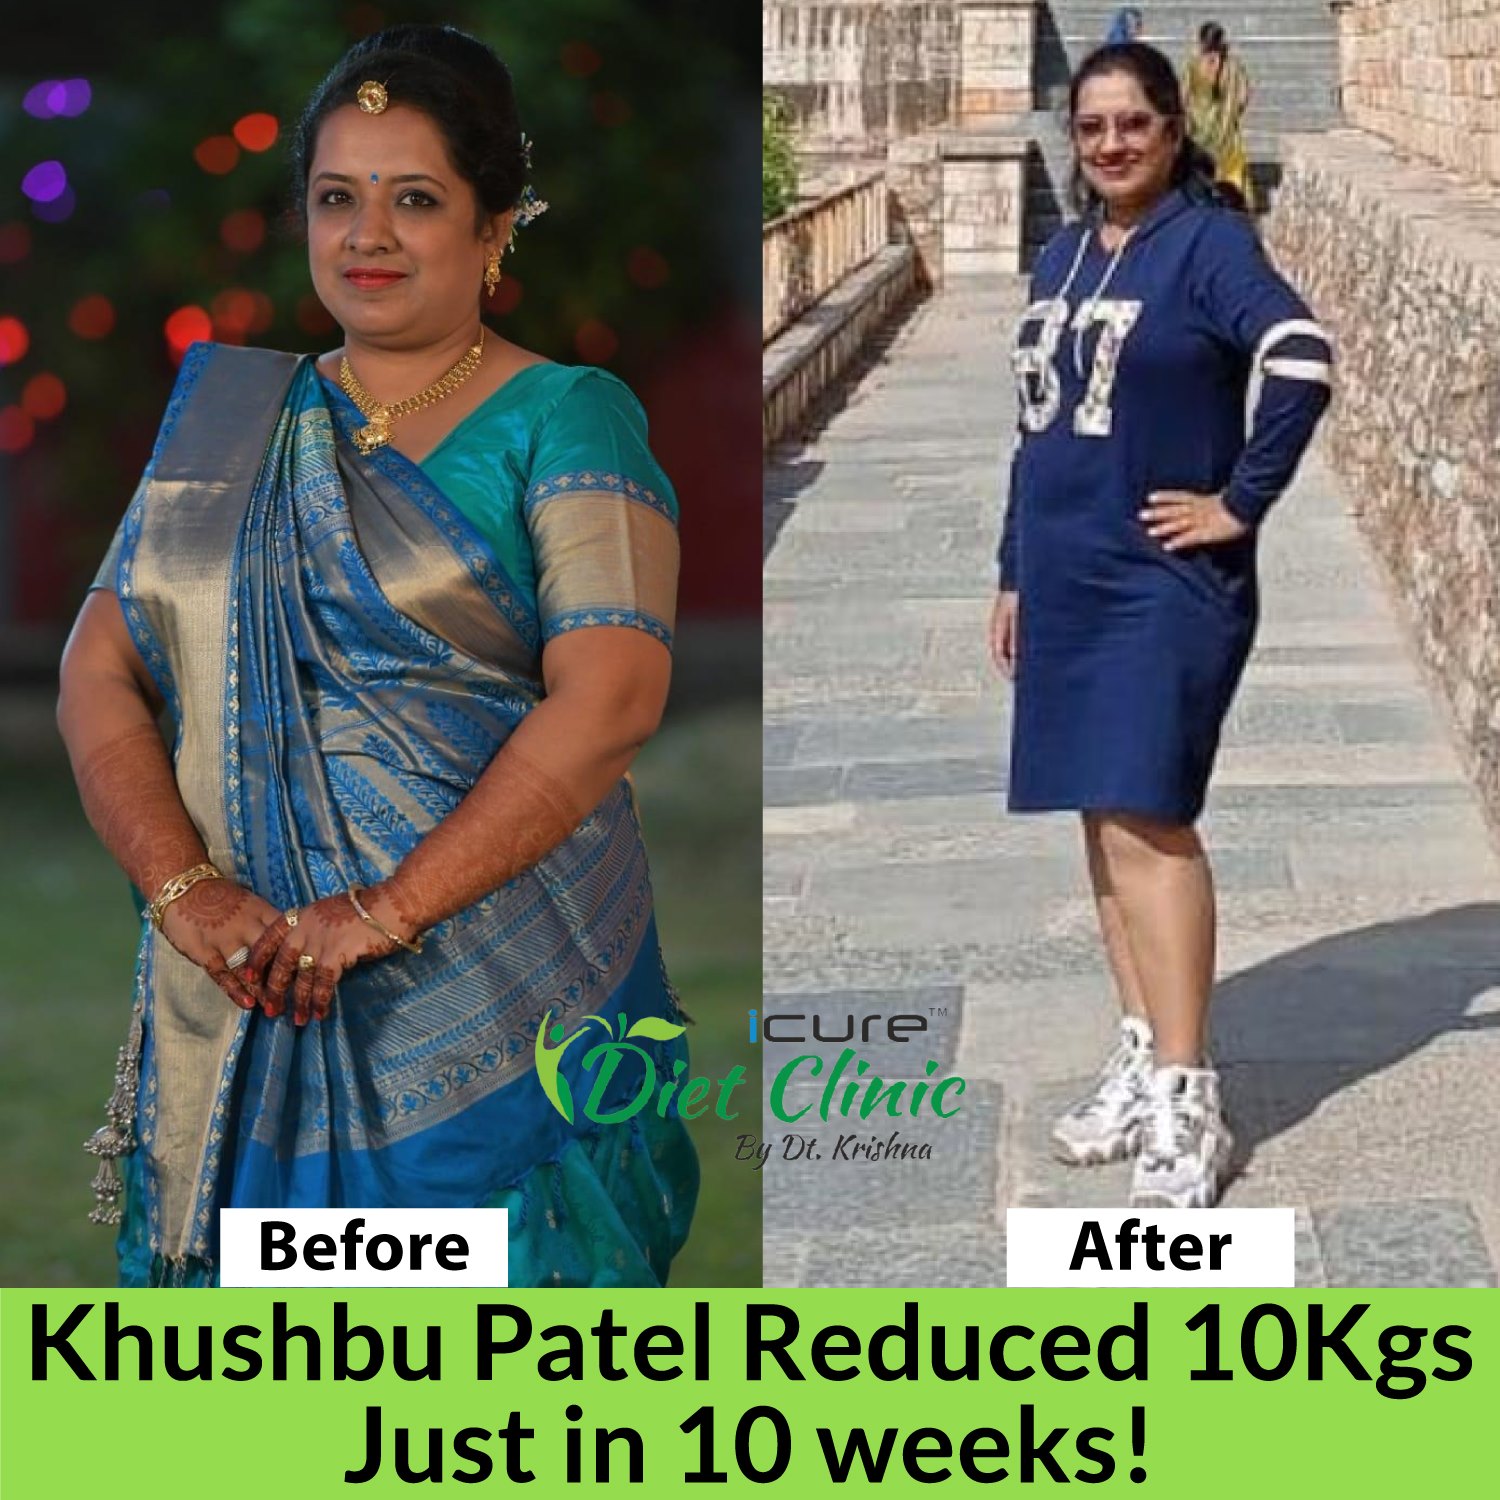 Khushbu Patel reduced 10 kgs in just 10 weeks